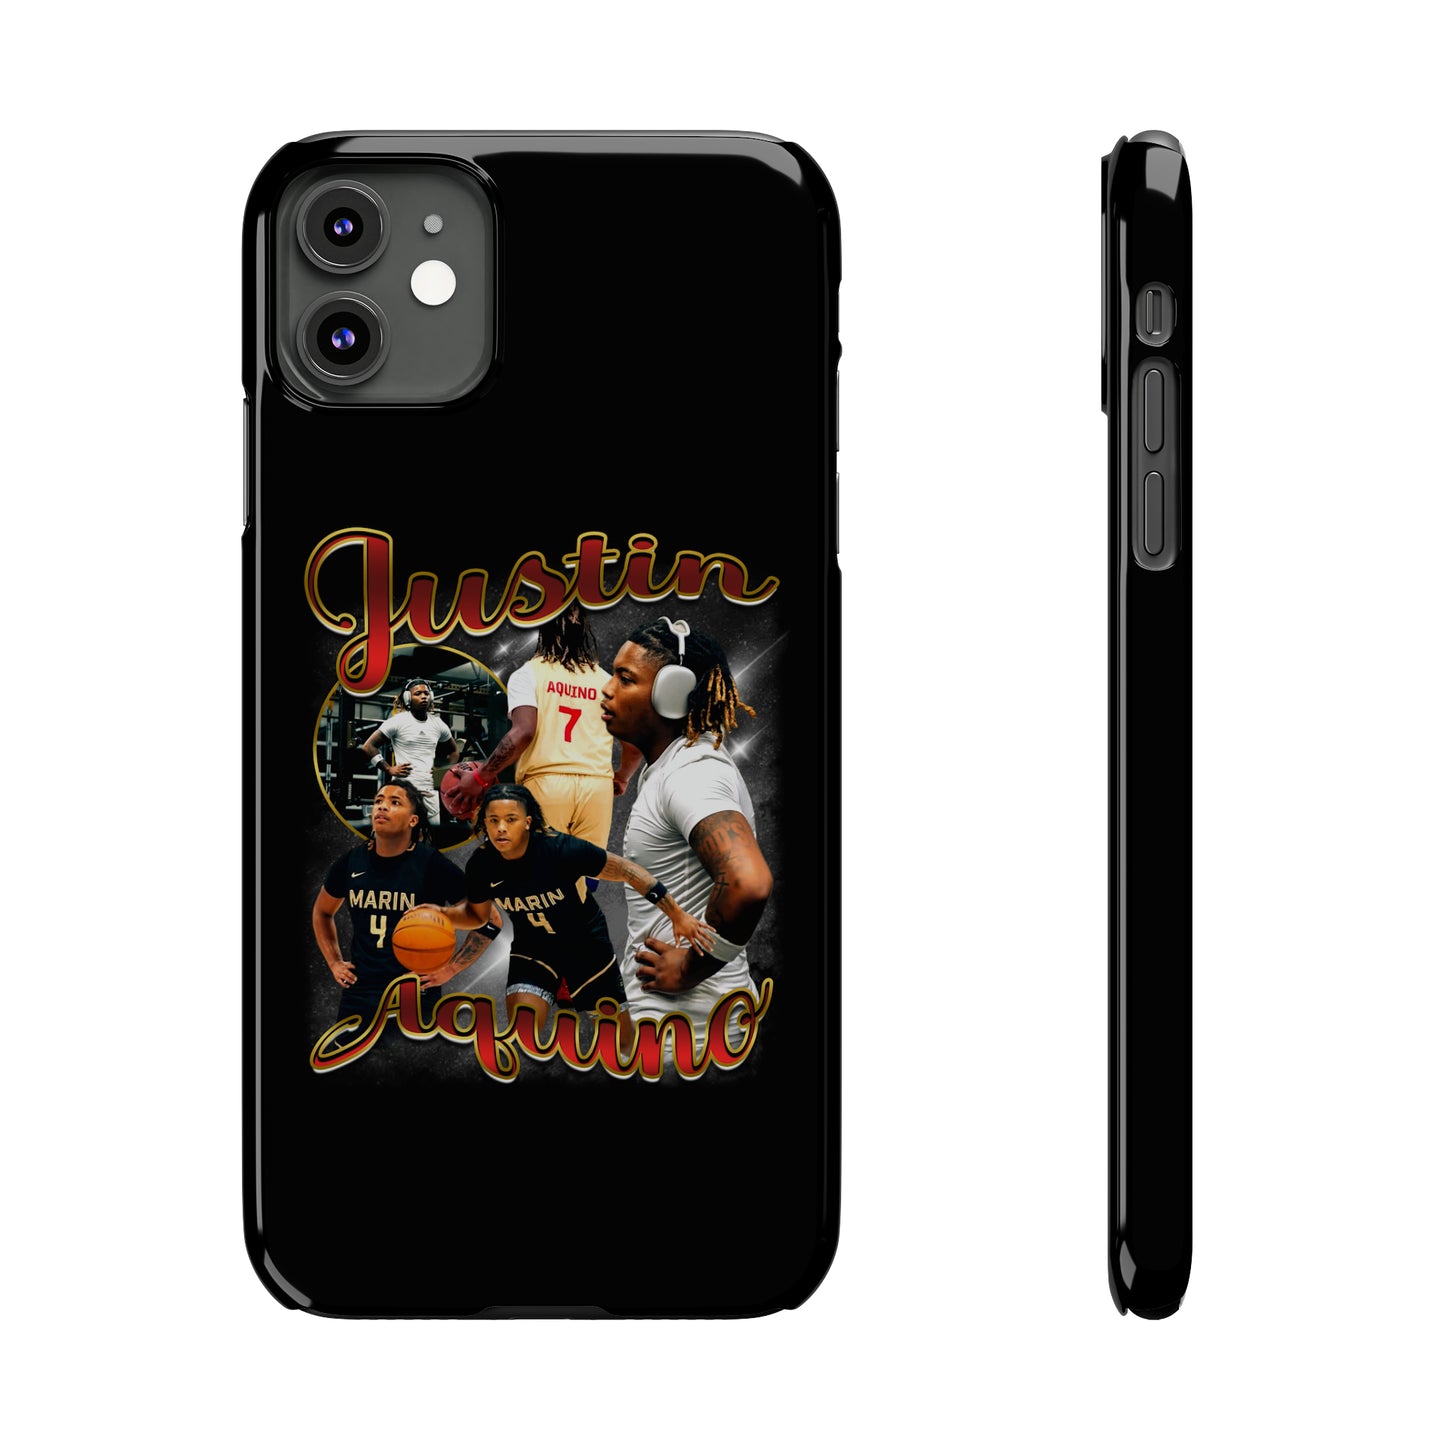 Justin Aquino Slim Phone Cases